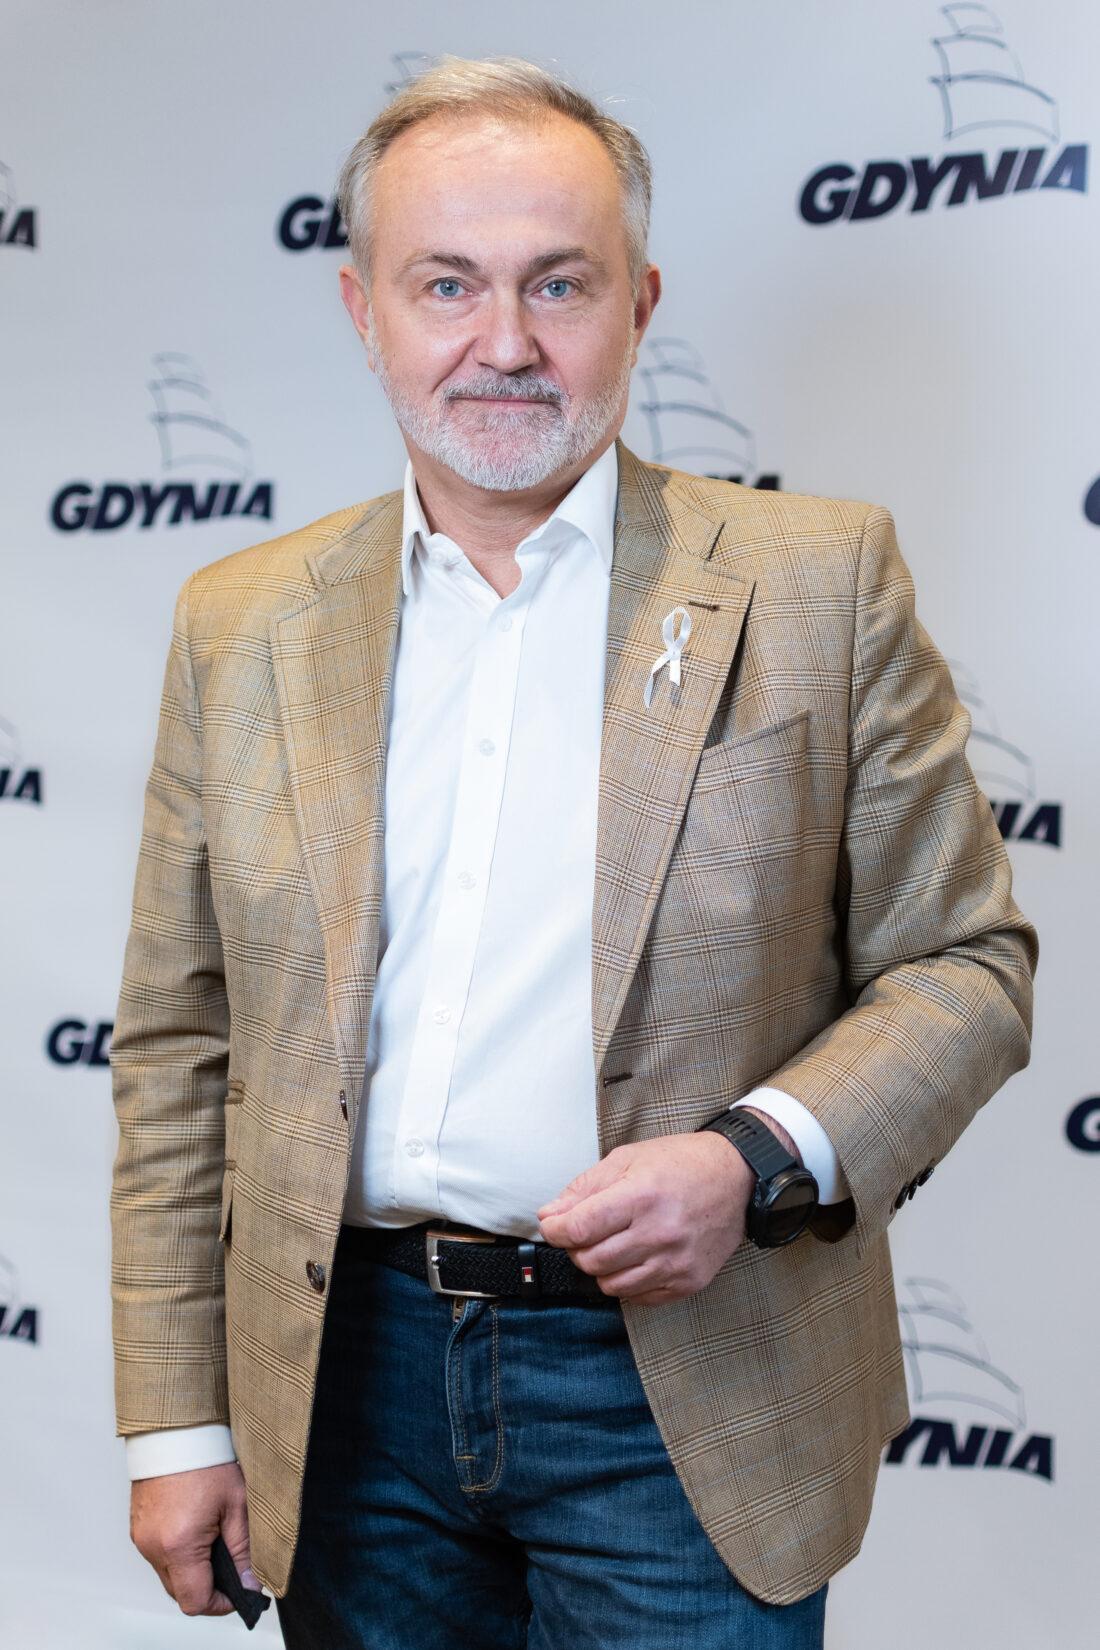 Zdjęcie: Na zdj. prezydent Gdyni Wojciech Szczurek z symboliczną białą wstążką, fot. Kamil Złoch